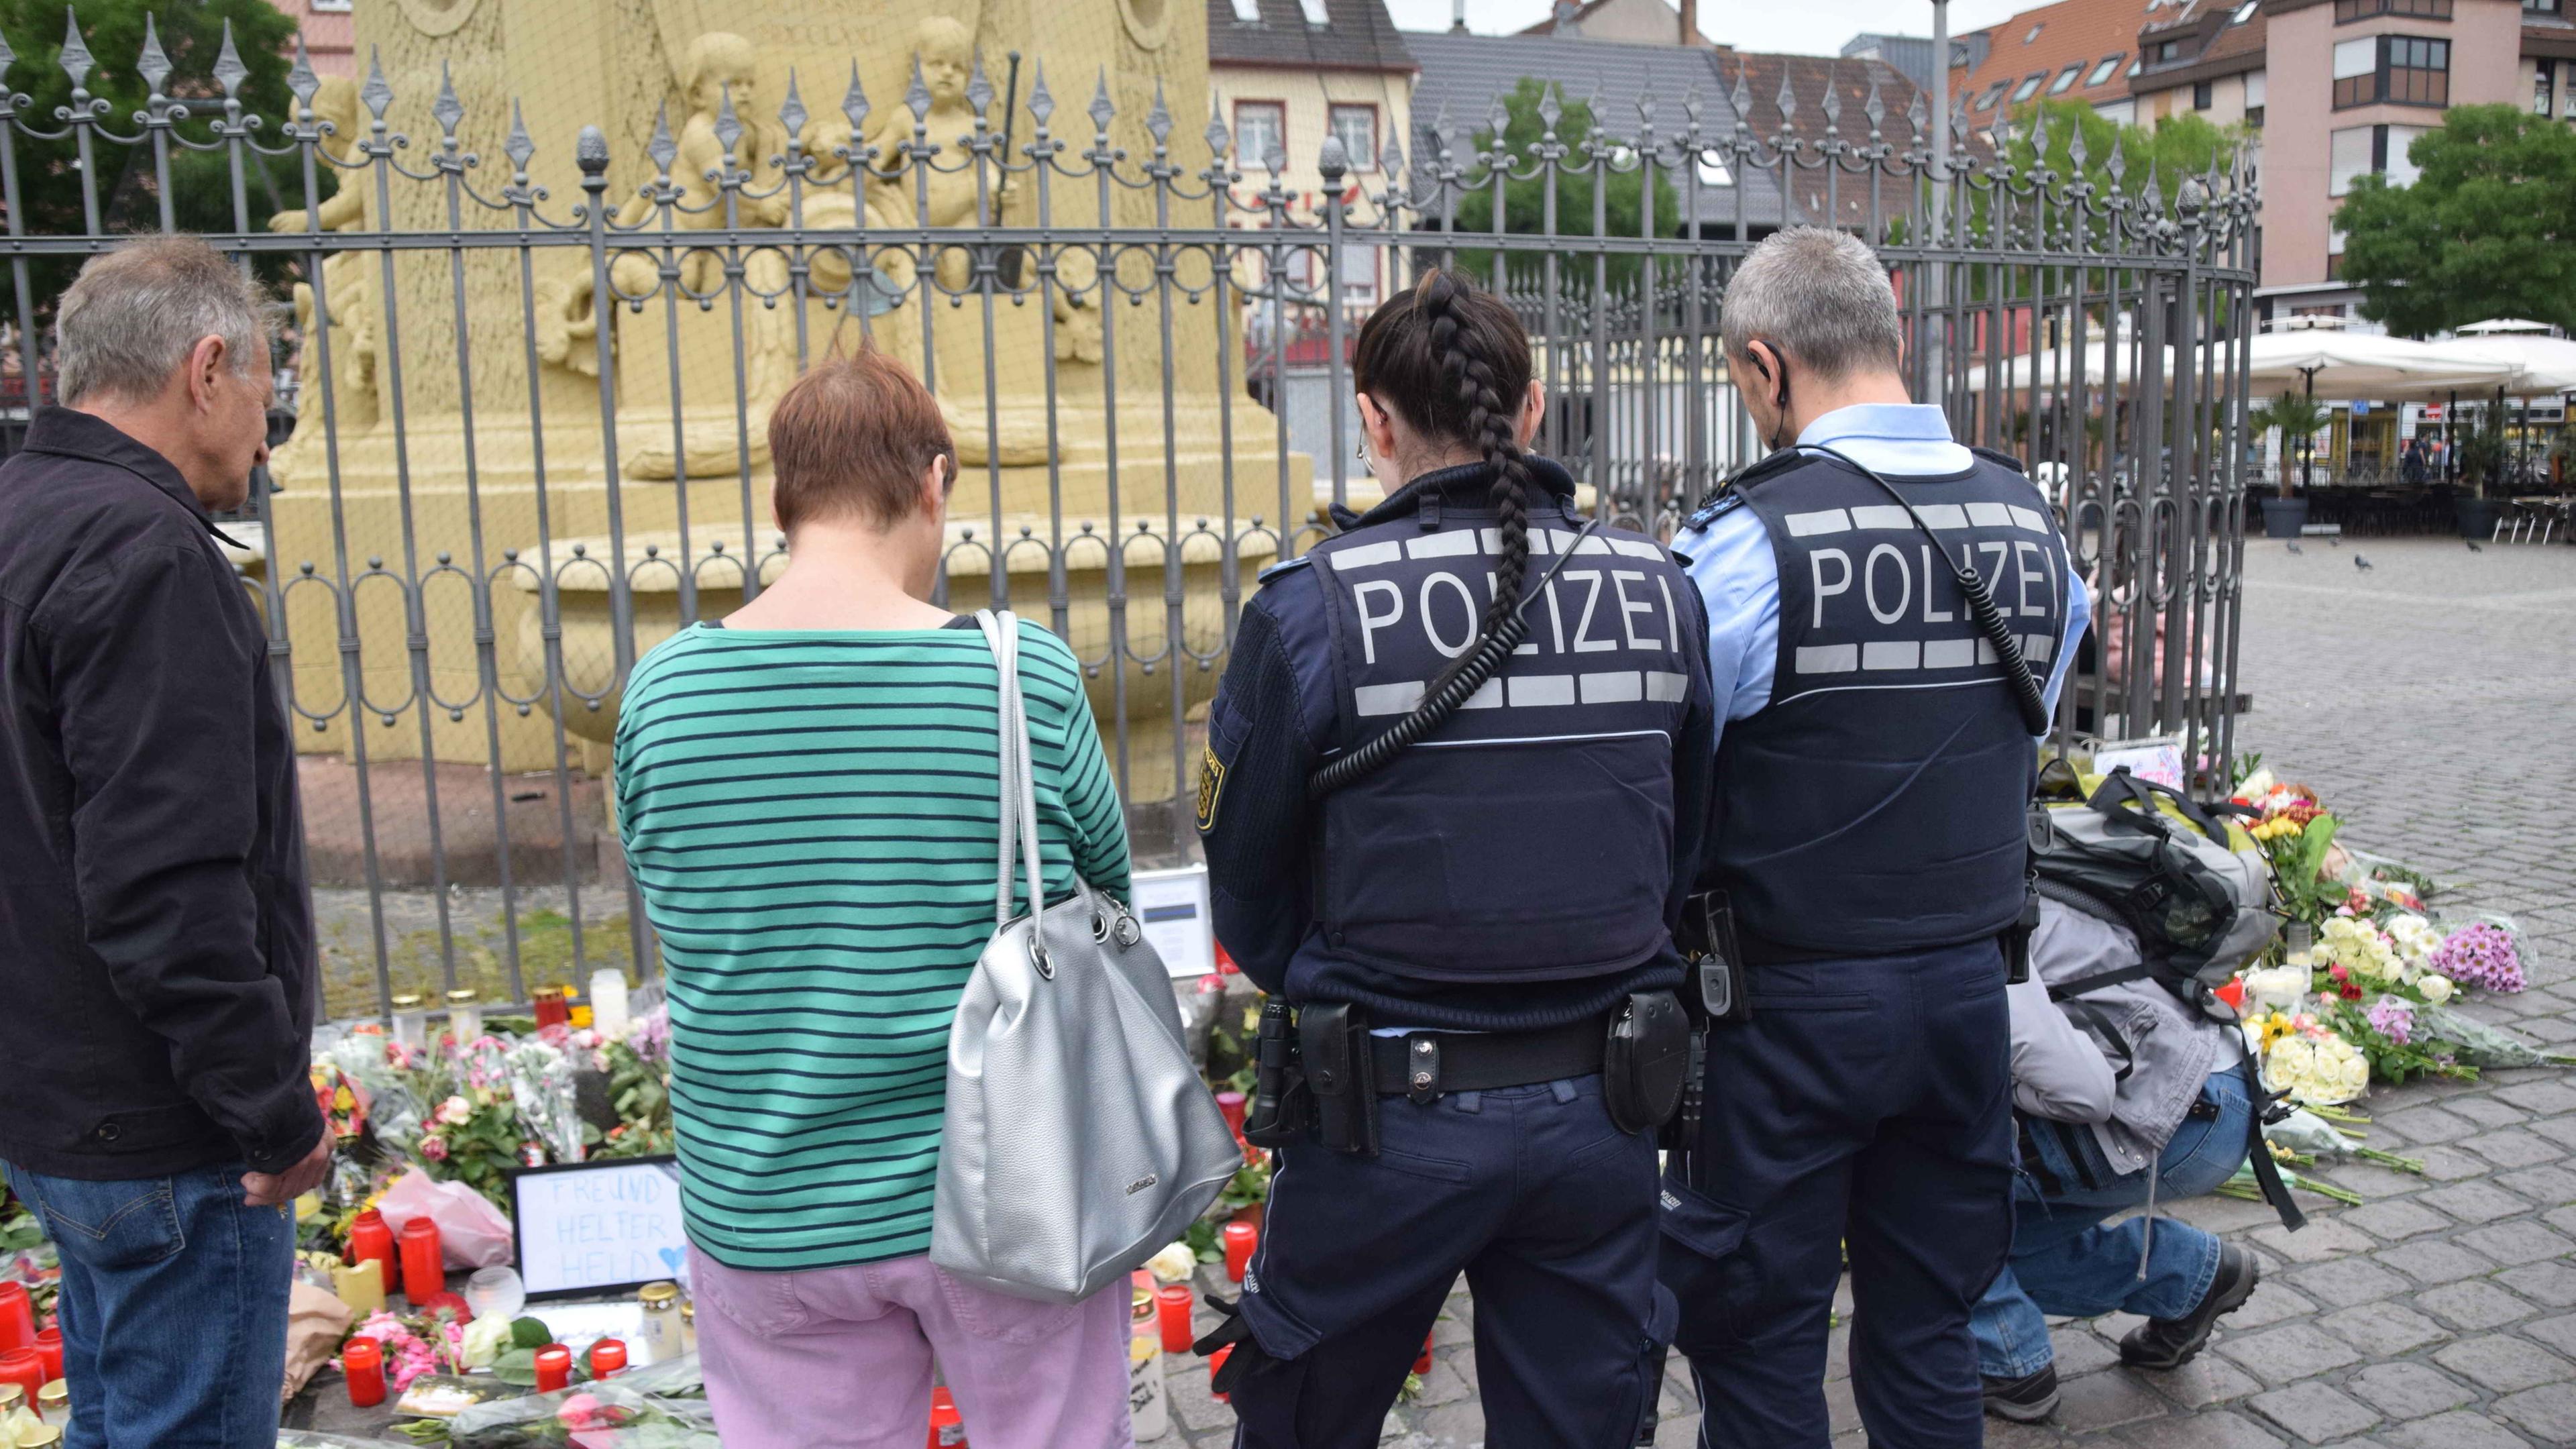 Baden-Württemberg, Mannheim: Zahlreiche Personen, darunter Polizisten, stehen in unmittelbarer Nähe des Tatorts vor niedergelegten Kerzen und Blumen.